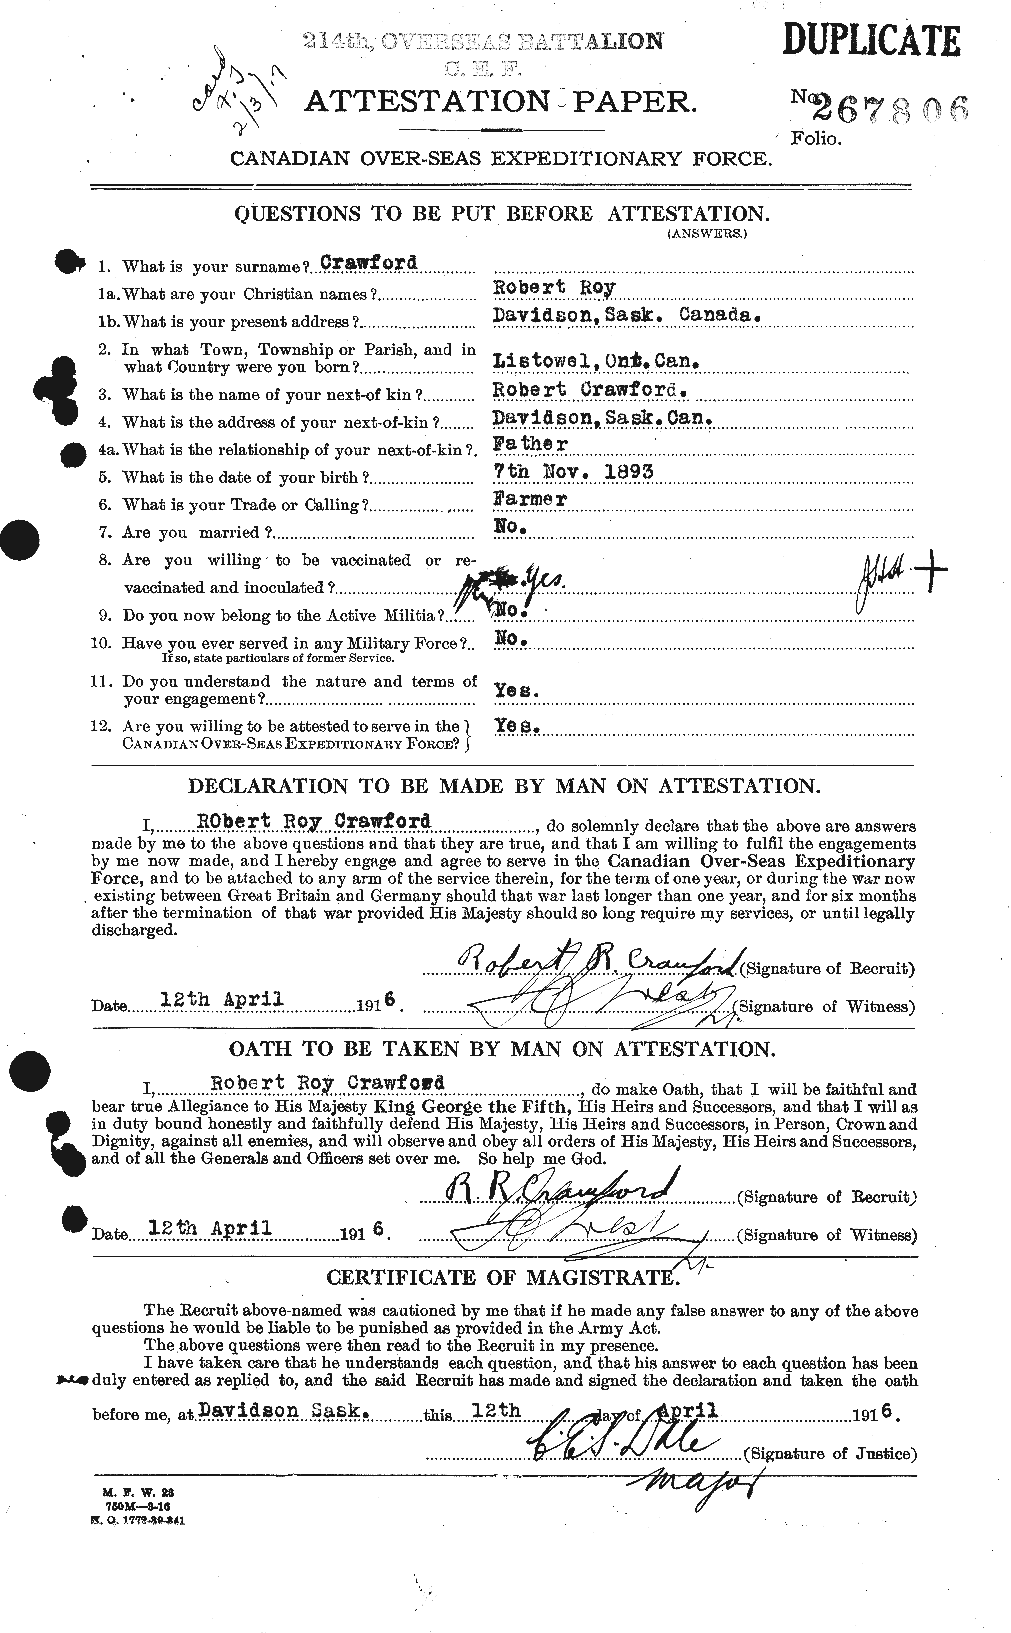 Dossiers du Personnel de la Première Guerre mondiale - CEC 061395a